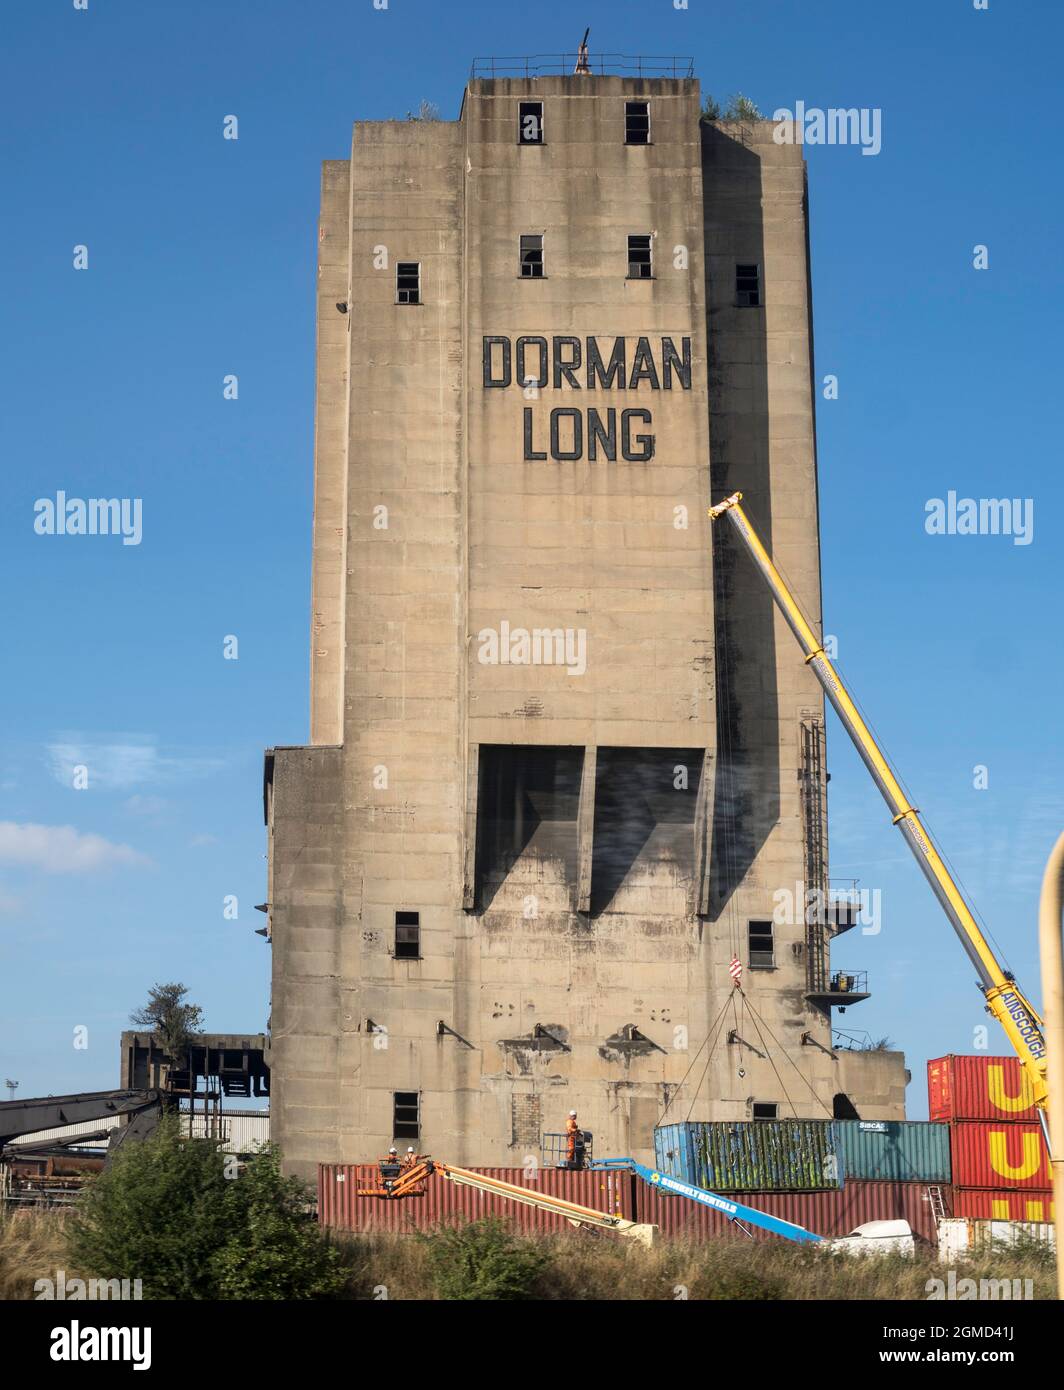 Dorman Long Tower, ein börsennotiertes Gebäude, das kontrovers geführt wurde, wurde von seiner Liste zurückgezogen und abgerissen, Redcar, Teesside, England, Großbritannien Stockfoto